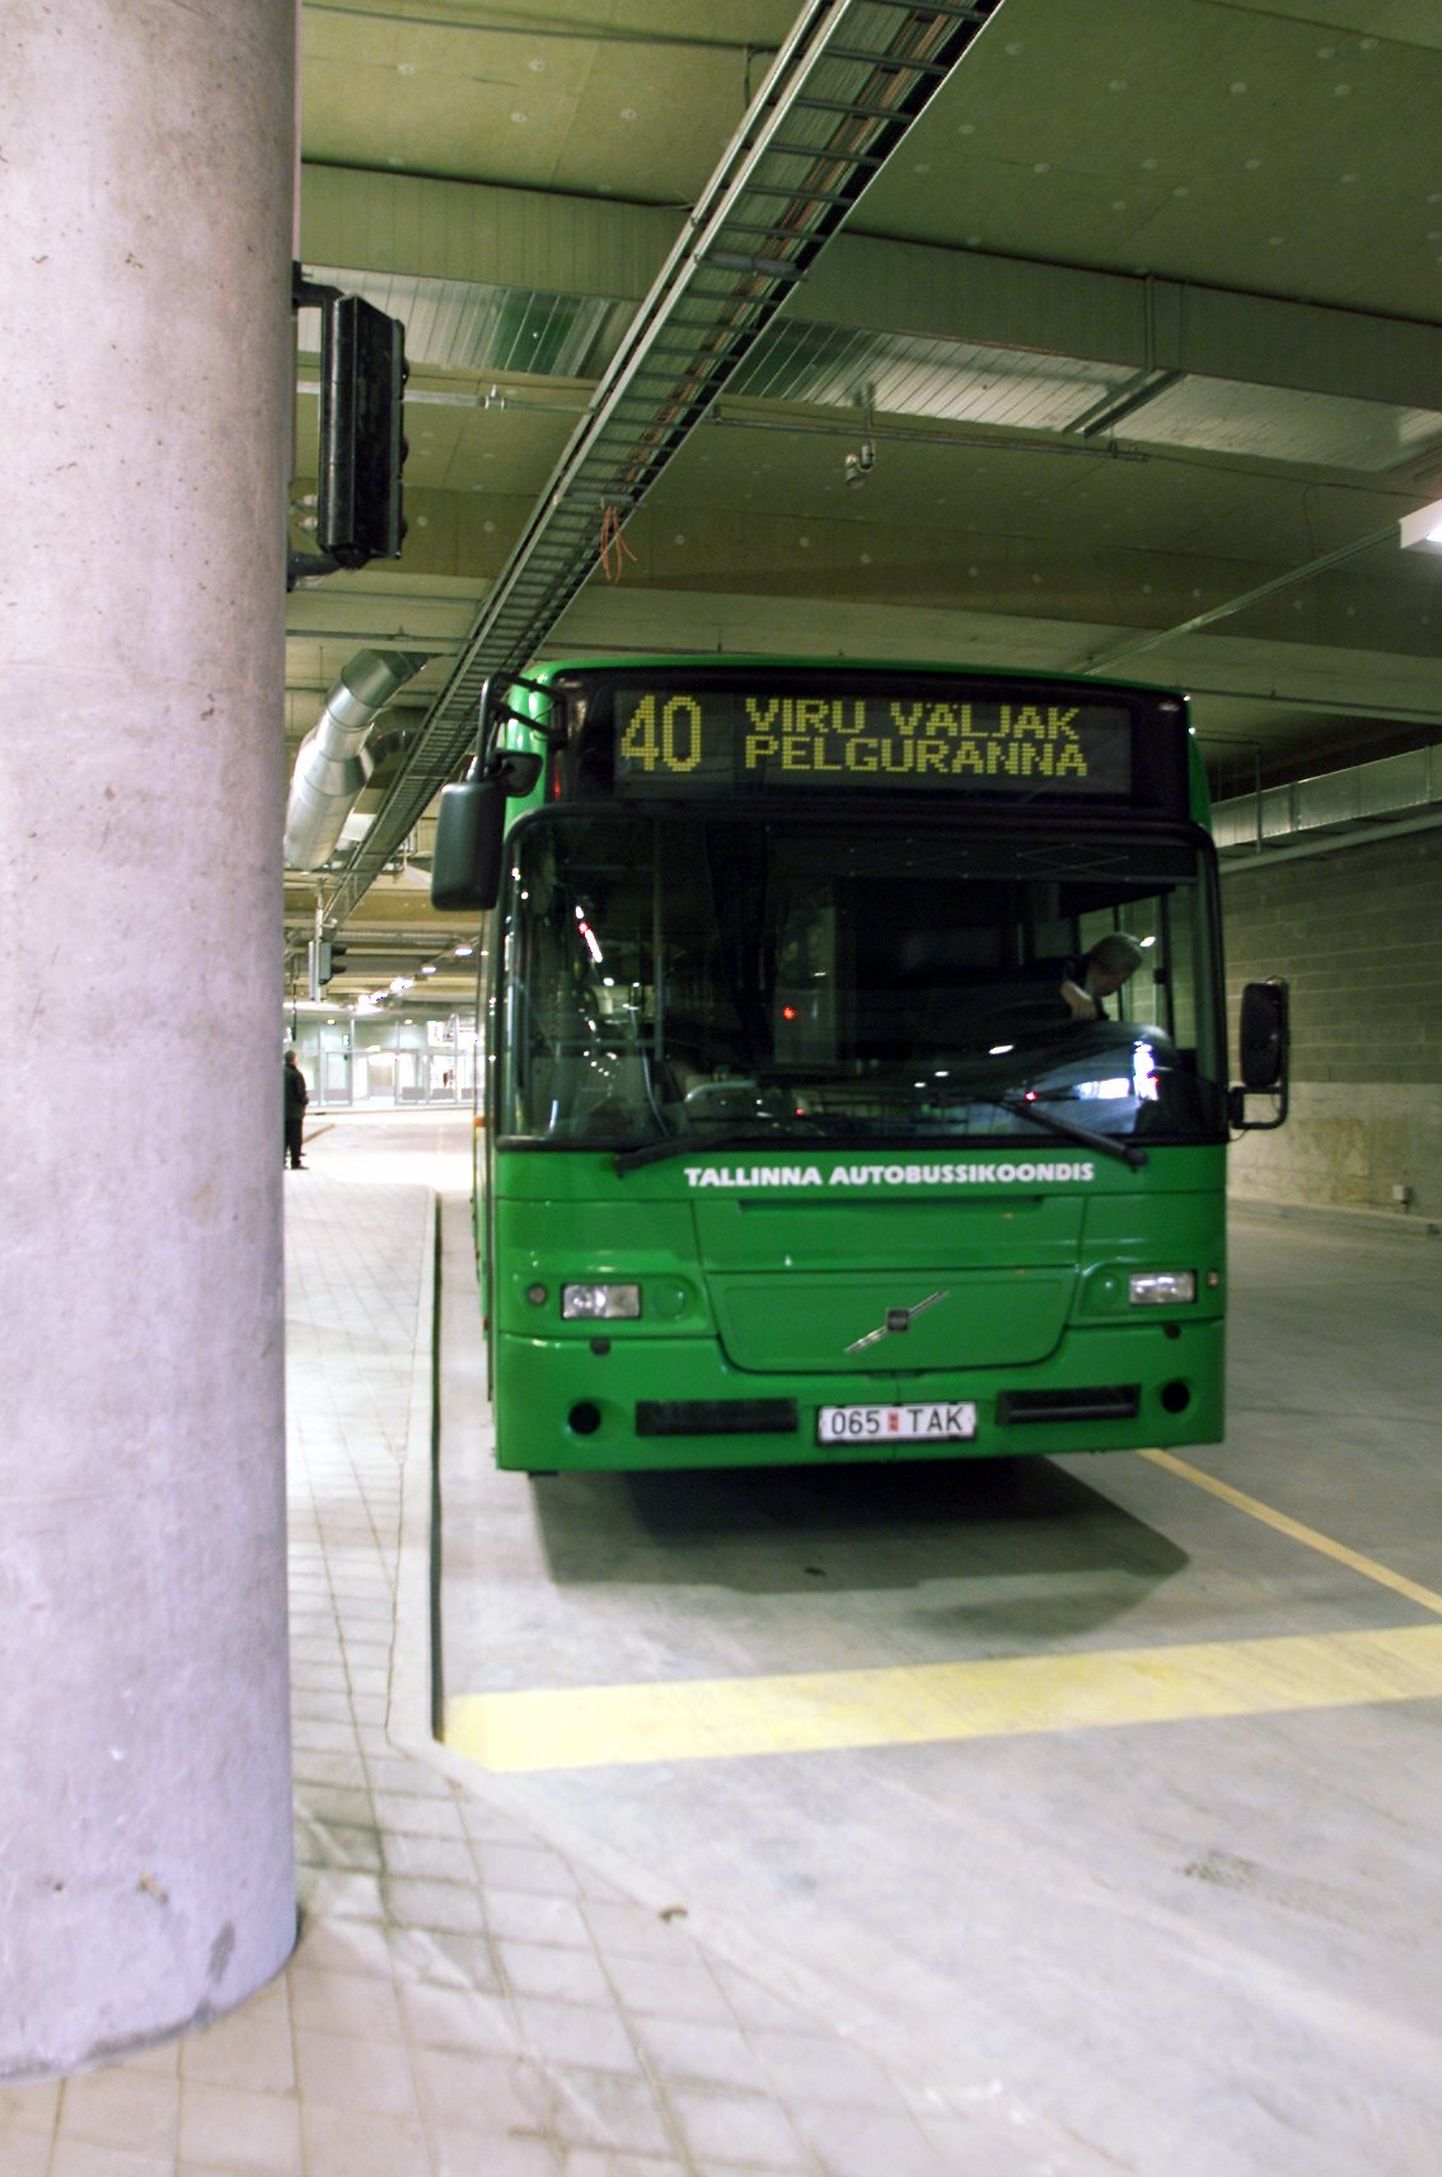 TLMPM05: VIRU KESKUSE BUSSITERMINAL :TALLINN, EESTI 15APR04. 
Viru keskuse uue bussiterminali katsetused möödusid suuremate viperusteta. Pildil bussid terminalis.
kr/Foto KÜLLIKE ROOVÄLI/POSTIMEES